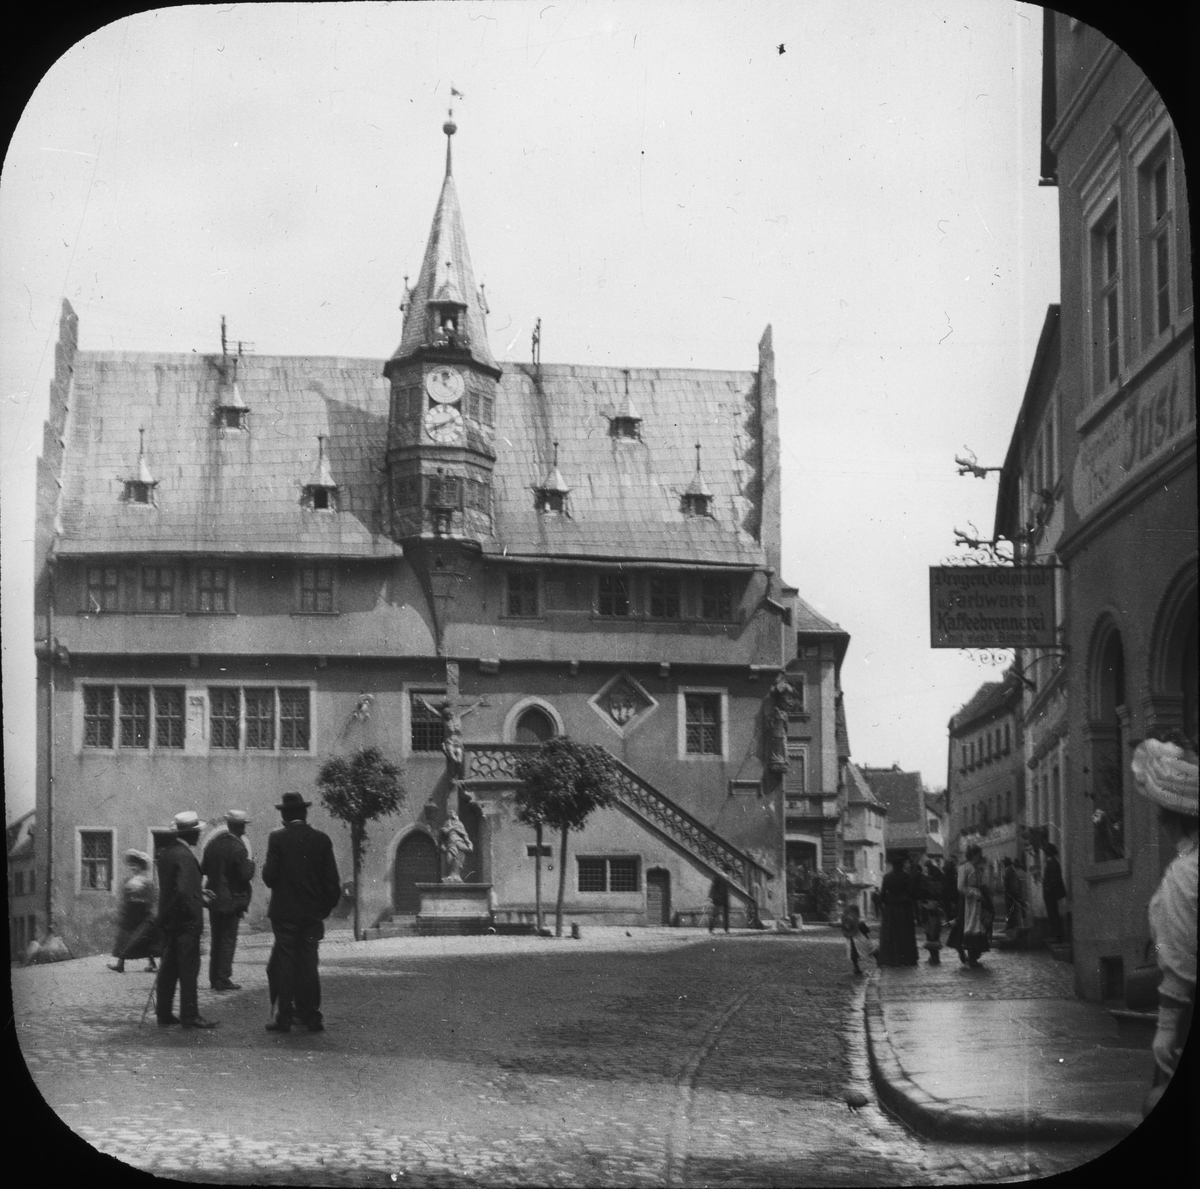 Skioptikonbild med motiv av rådhuset med astronomiskt ur i Ochsenfurt.
Bilden har förvarats i kartong märkt: ?